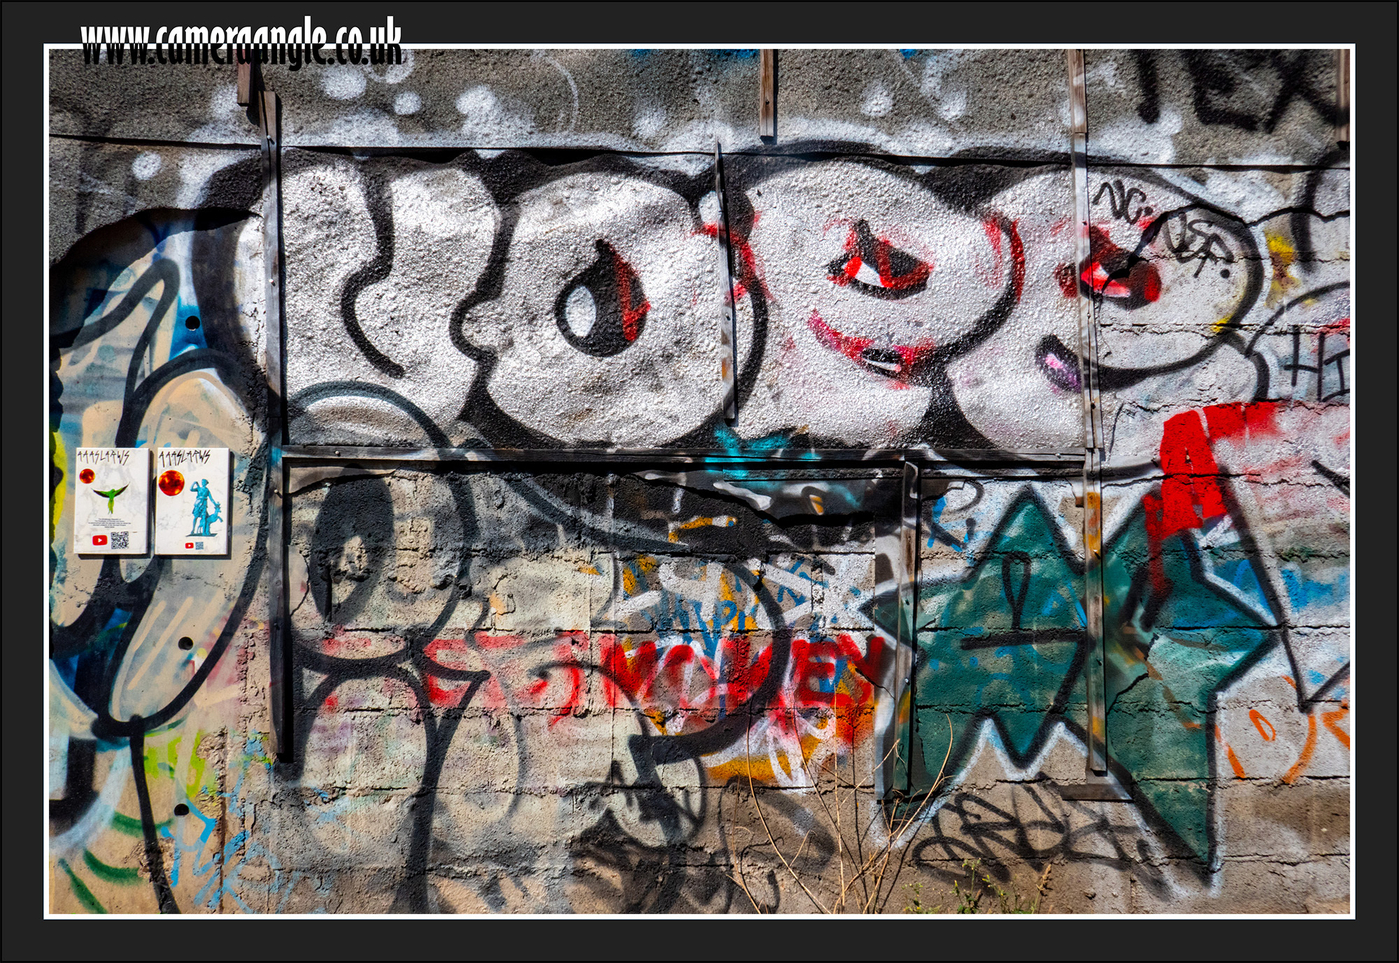 London_Graffiti
London Graffiti
Keywords: London Graffiti